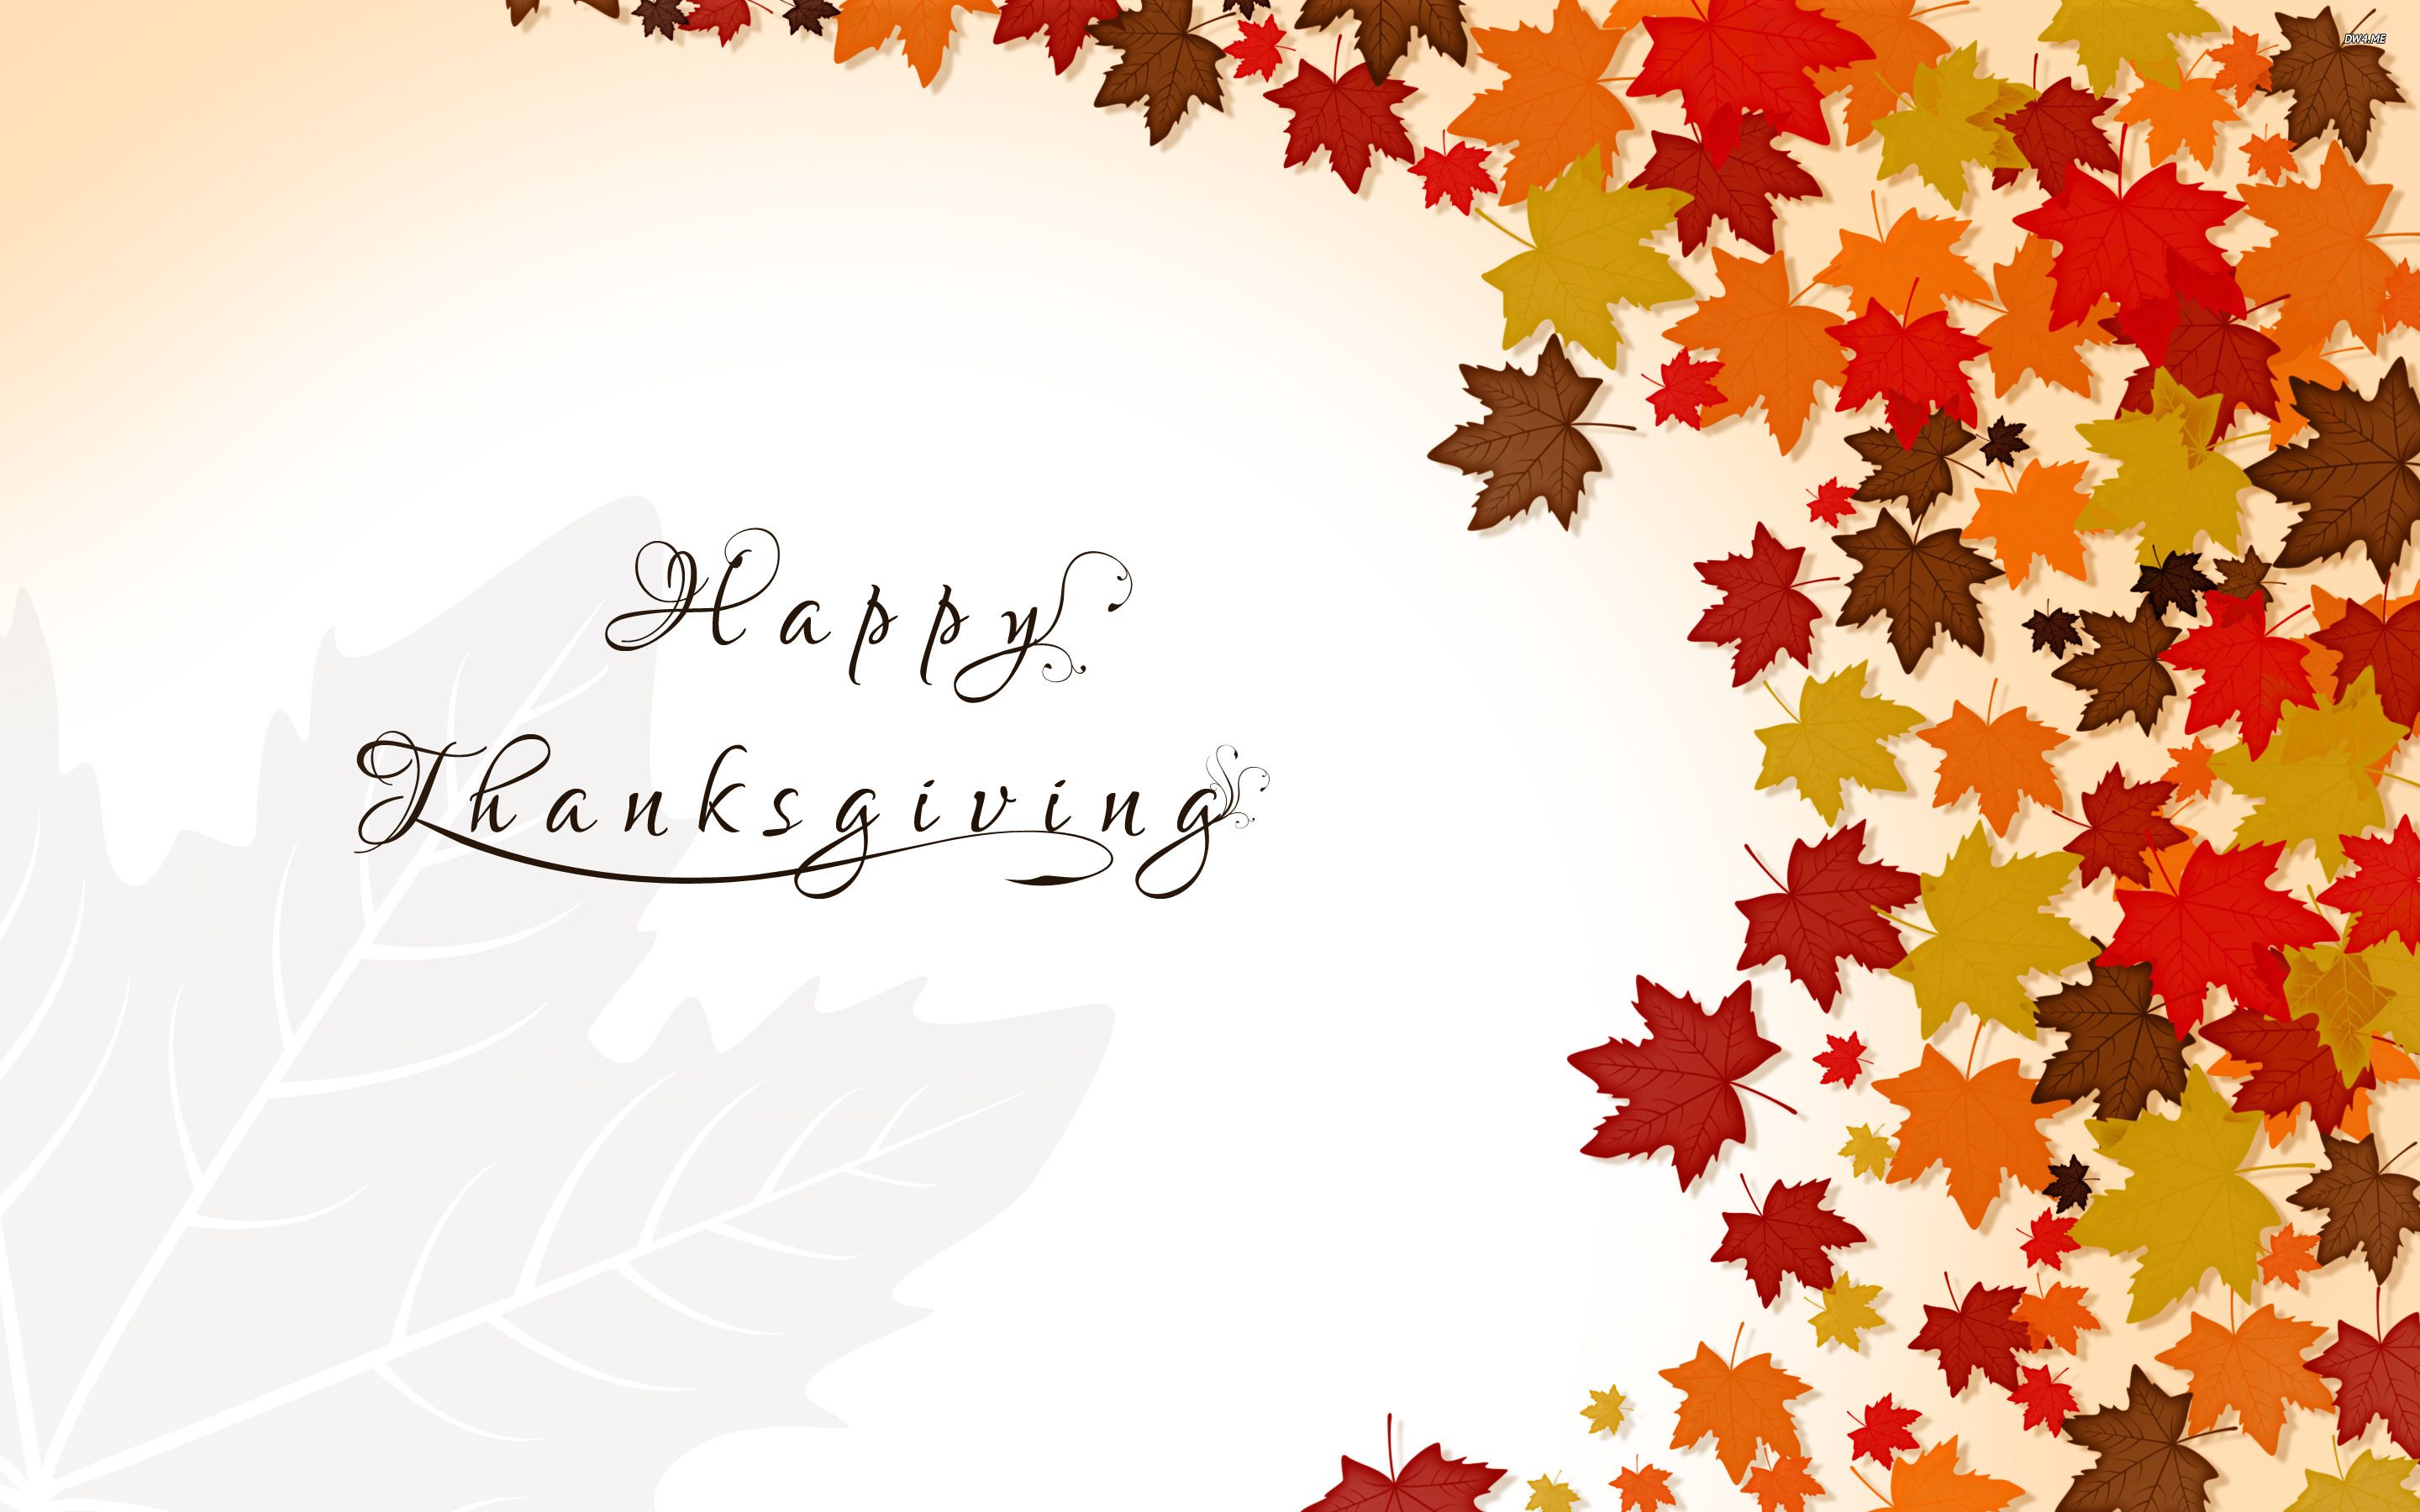 روز شکرگزاری (thanksgiving)